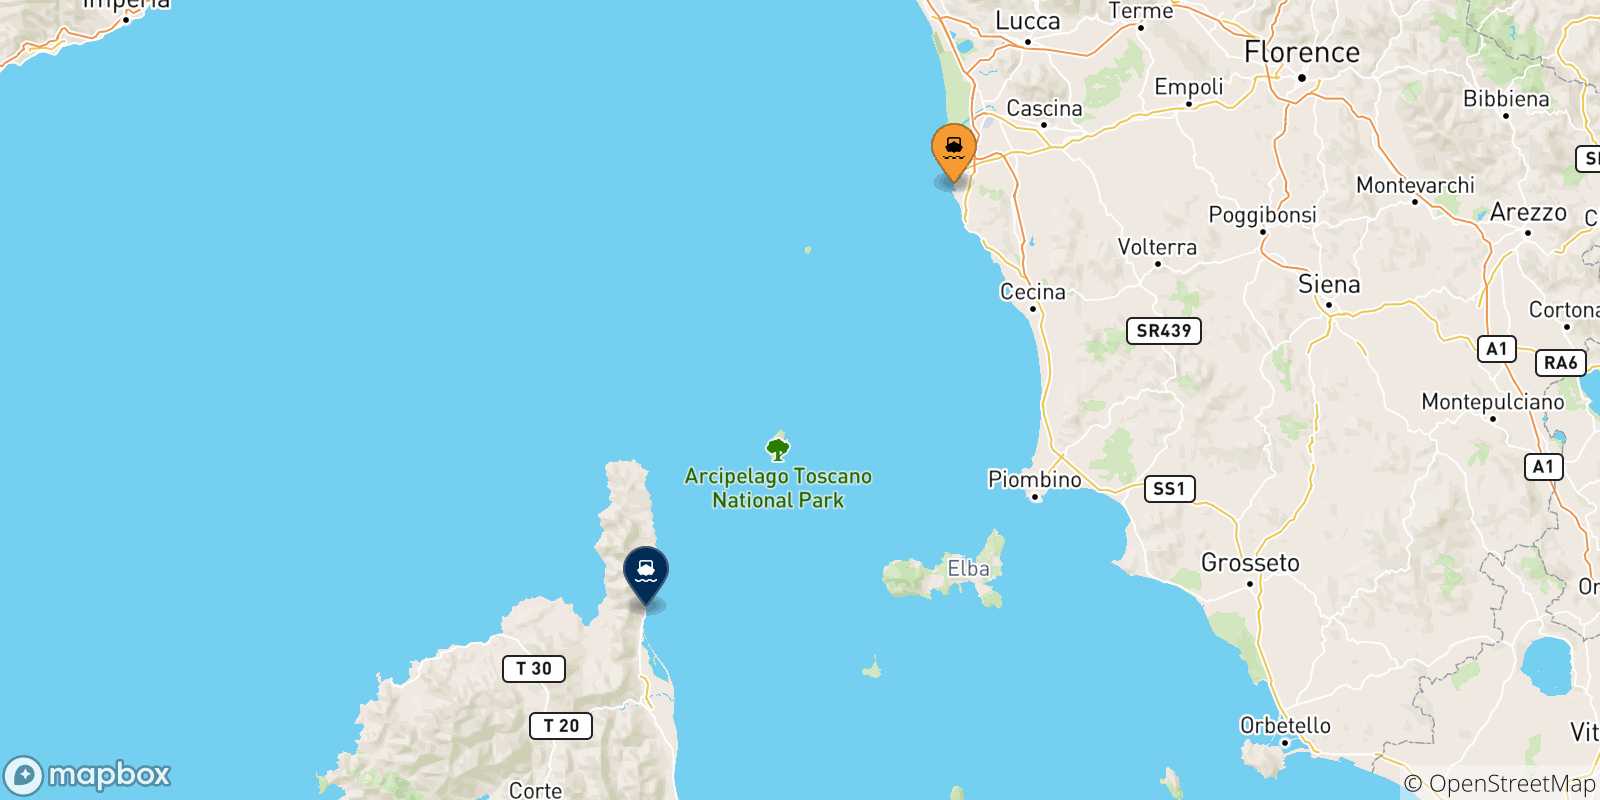 Mappa delle possibili rotte tra Livorno e la Francia